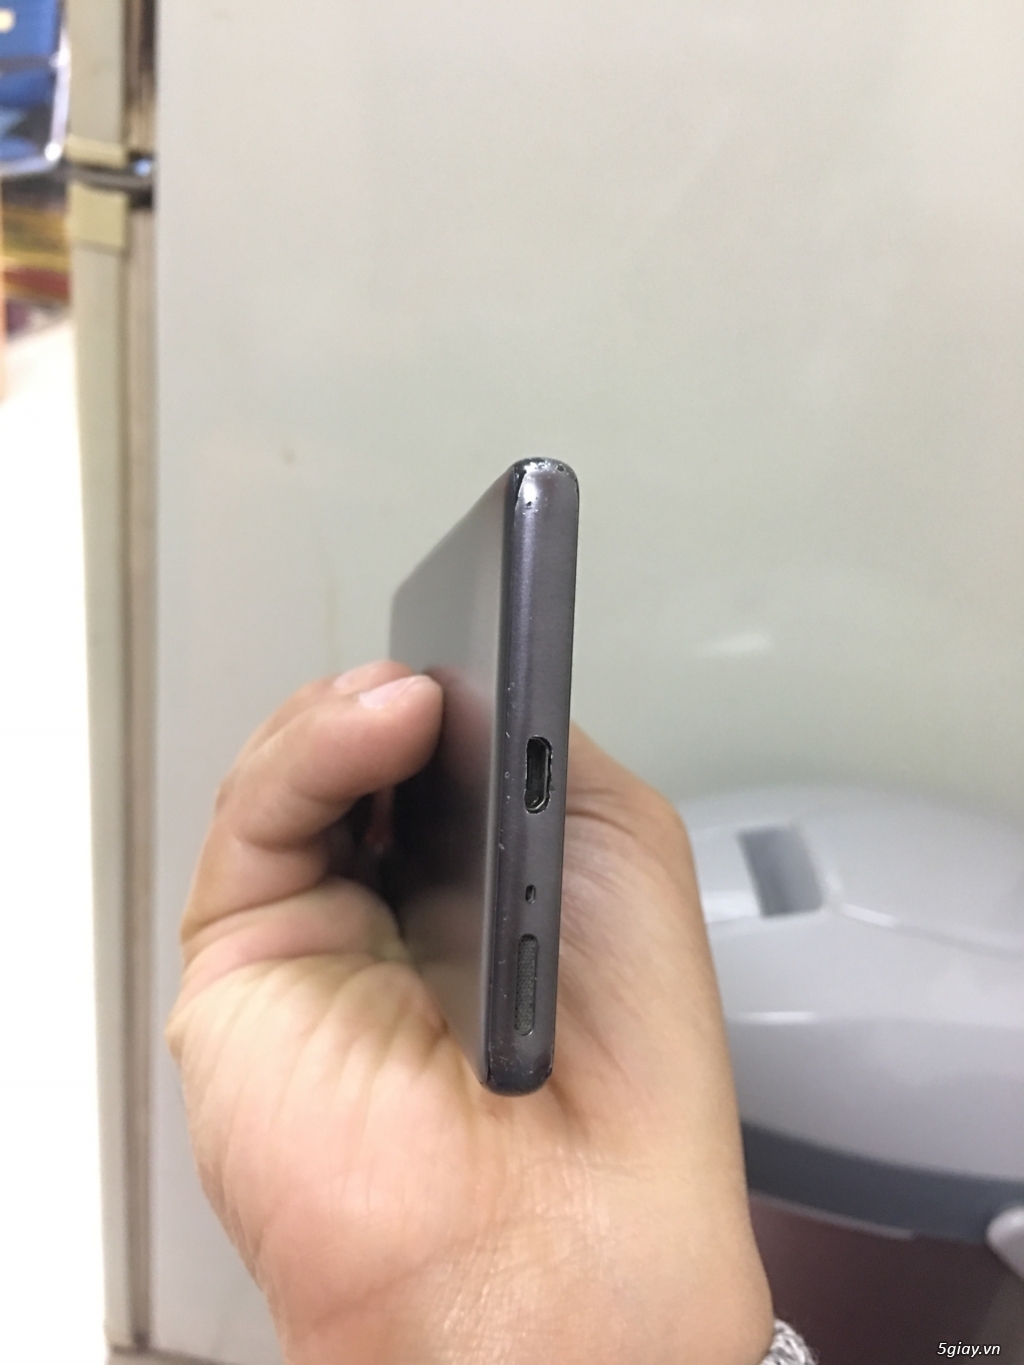 Bán điện thoại Sony XA còn bảo hành đến T6/2018